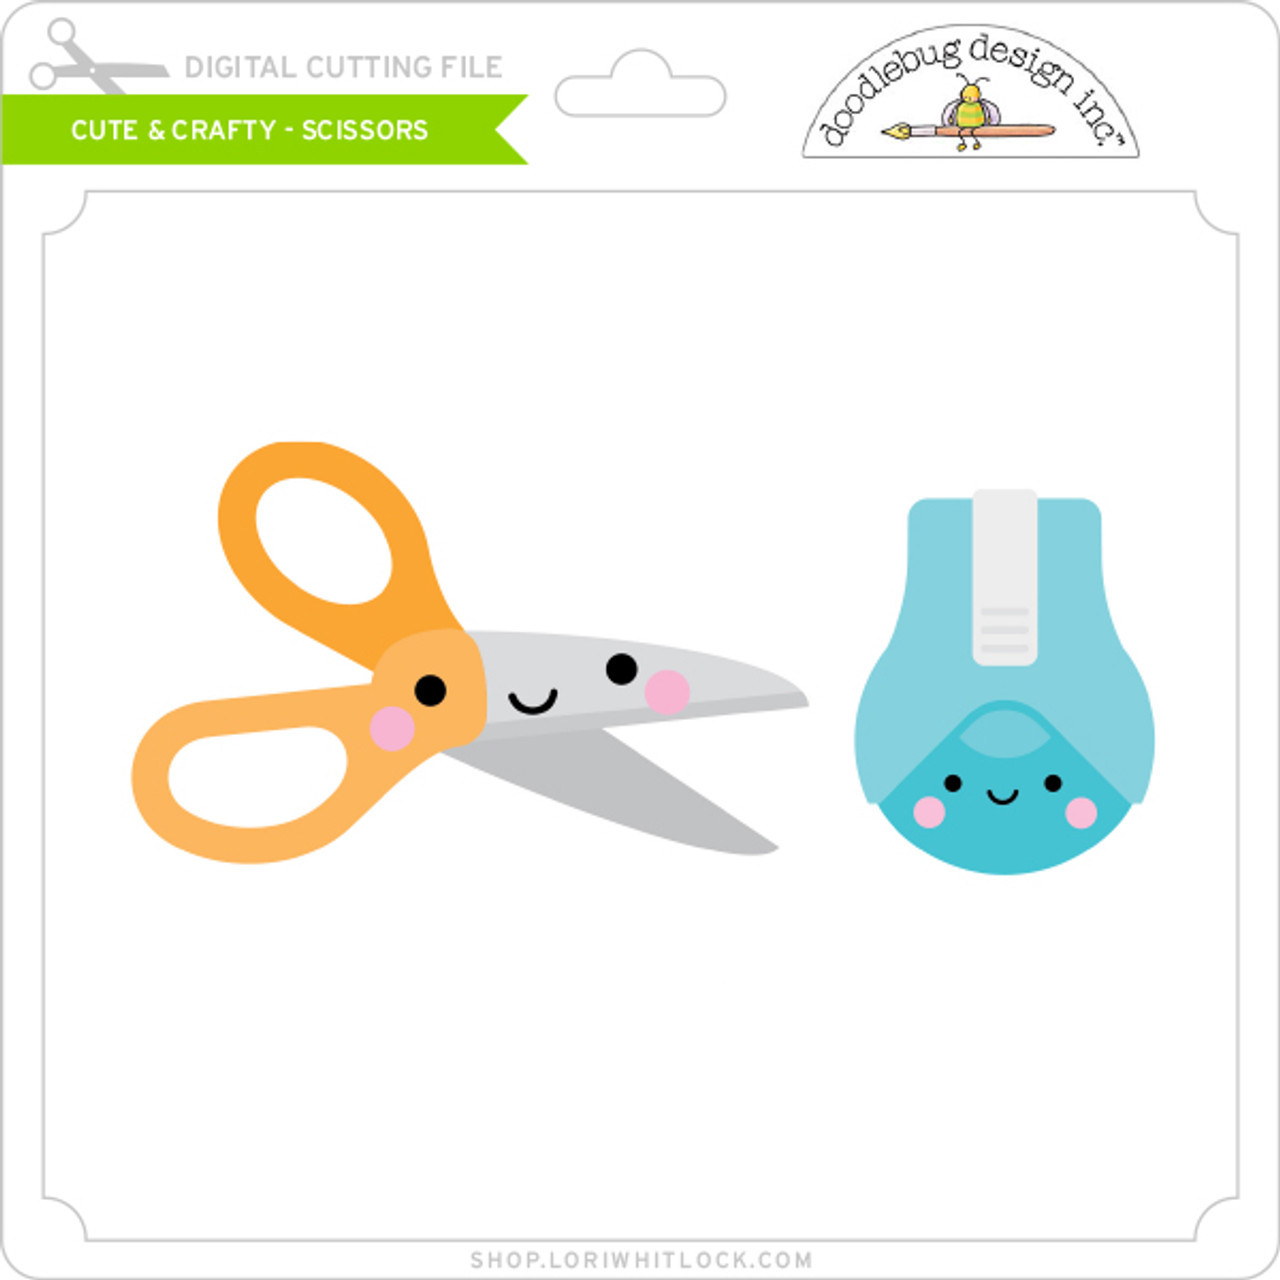 Cute & Crafty - Scissors - Lori Whitlock's SVG Shop